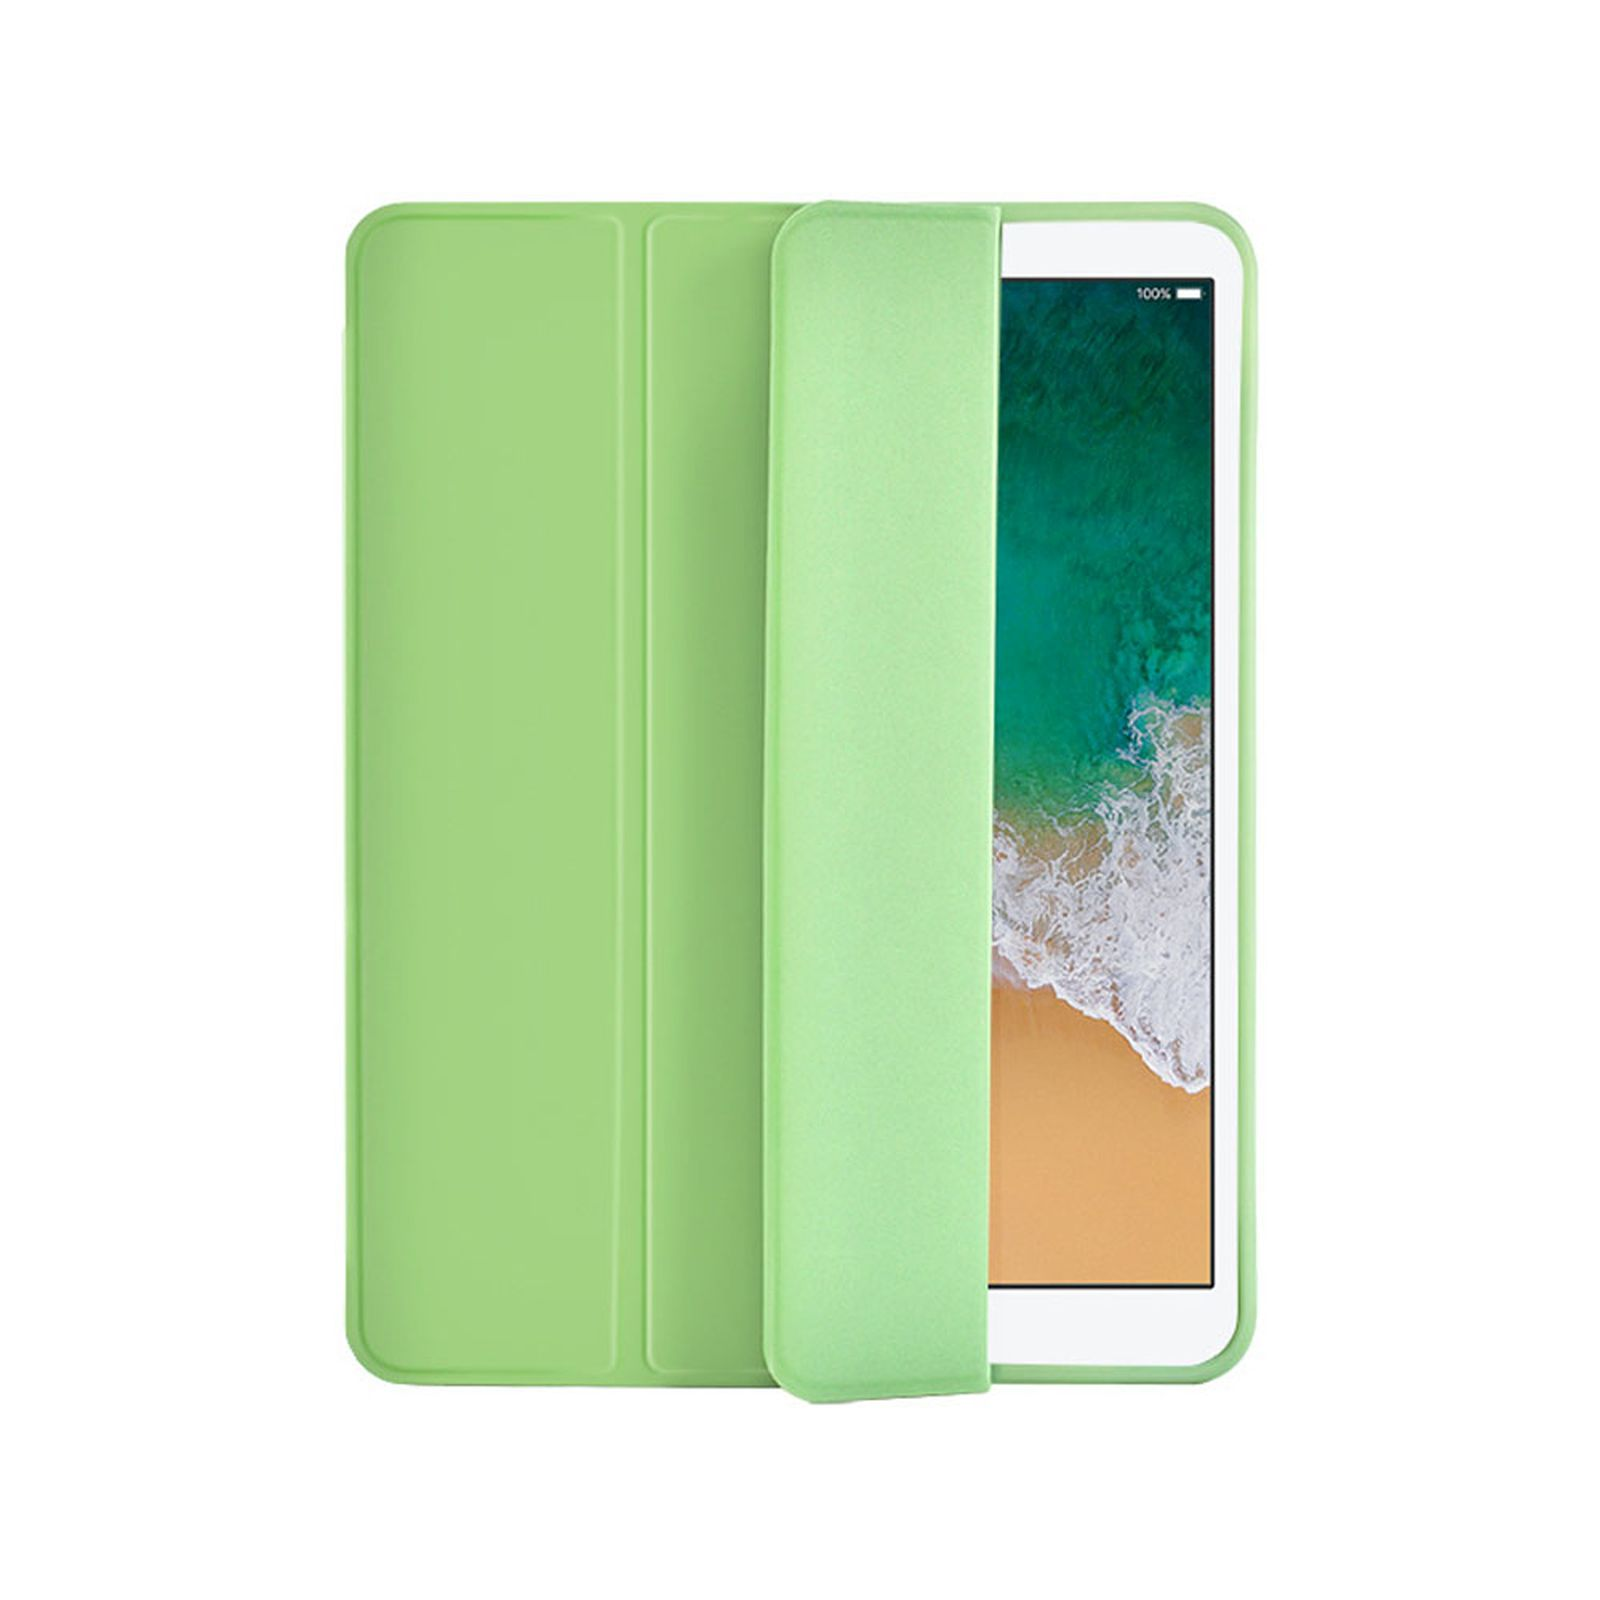 Hülle 2020 Grün LOBWERK iPad Bookcover Schutzhülle 12.9 Apple Kunststoff, für Pro